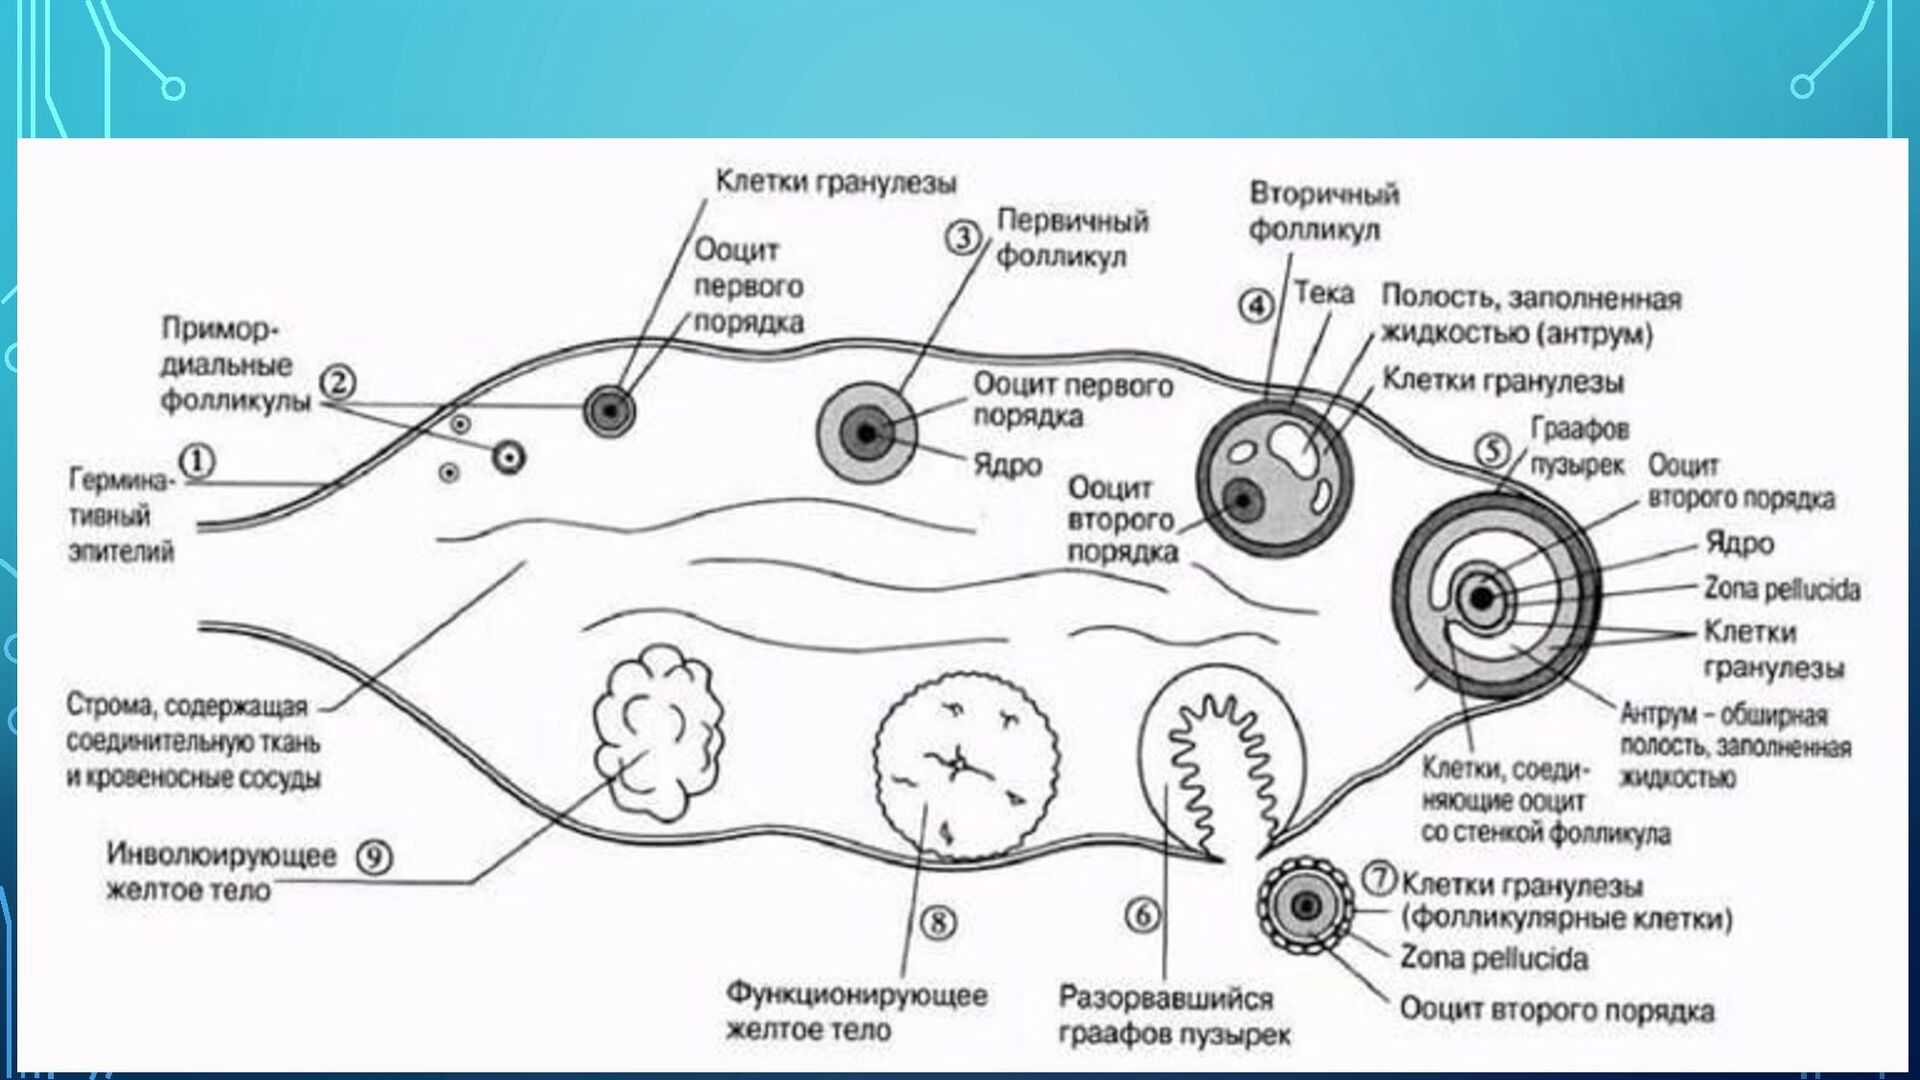 Где происходит созревание яйцеклеток. Схема оплодотворения яйцеклетки. Схема созревания яйцеклетки в яичнике. Схема оплодотворения яйцеклетки у человека. Фазы оплодотворения схема.